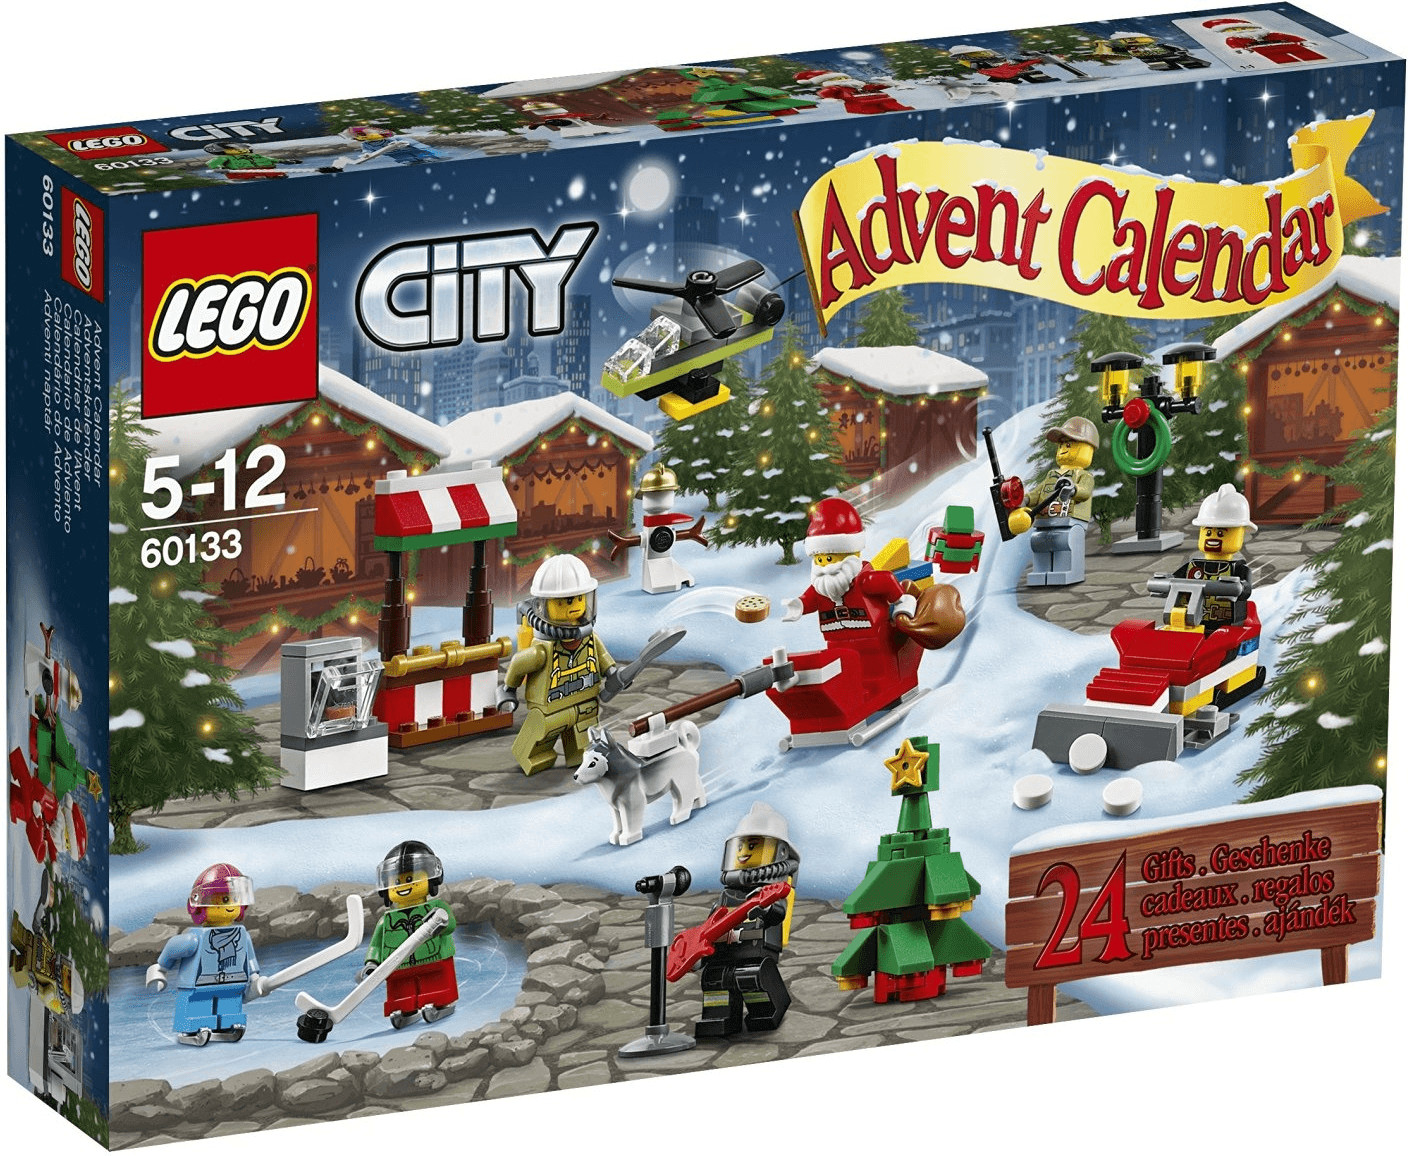 LEGO City Advent Calendar 2016 (60133)